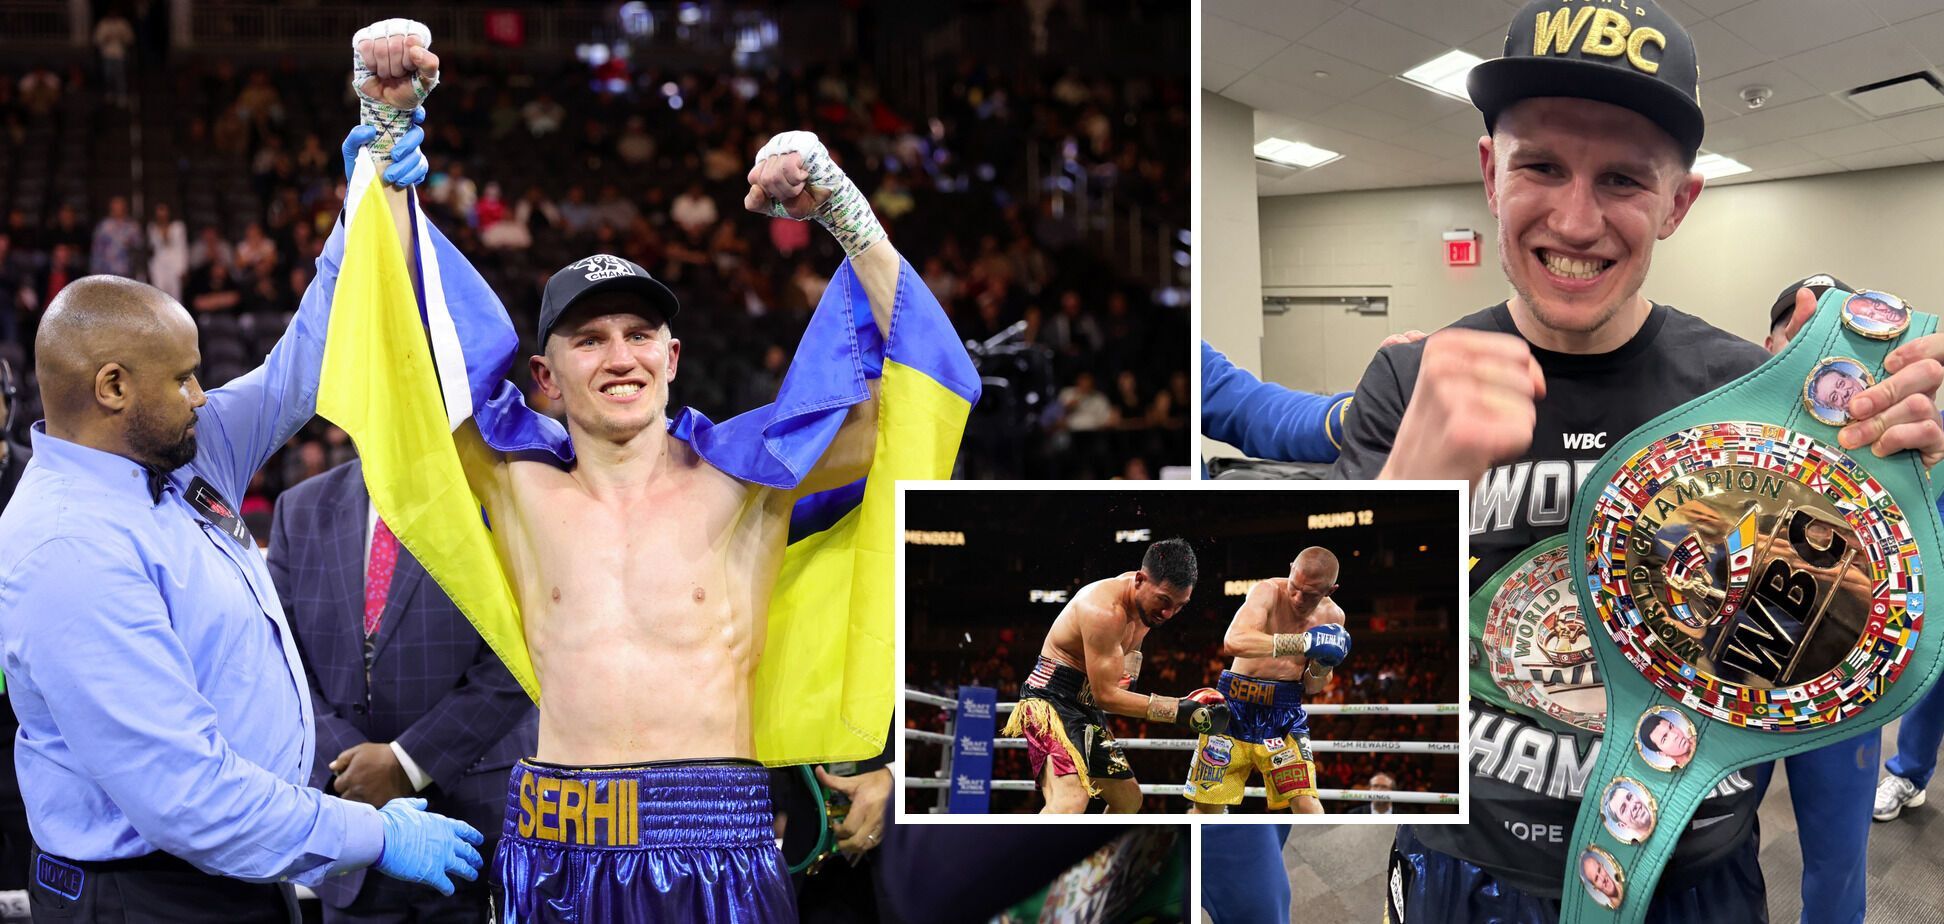 Po zwycięstwie mistrz świata w boksie wziął żółto-niebieską flagę i powiedział, że ''Ukraińcy są niezłomni''. Publiczność w Stanach Zjednoczonych zareagowała owacją na stojąco. Wideo